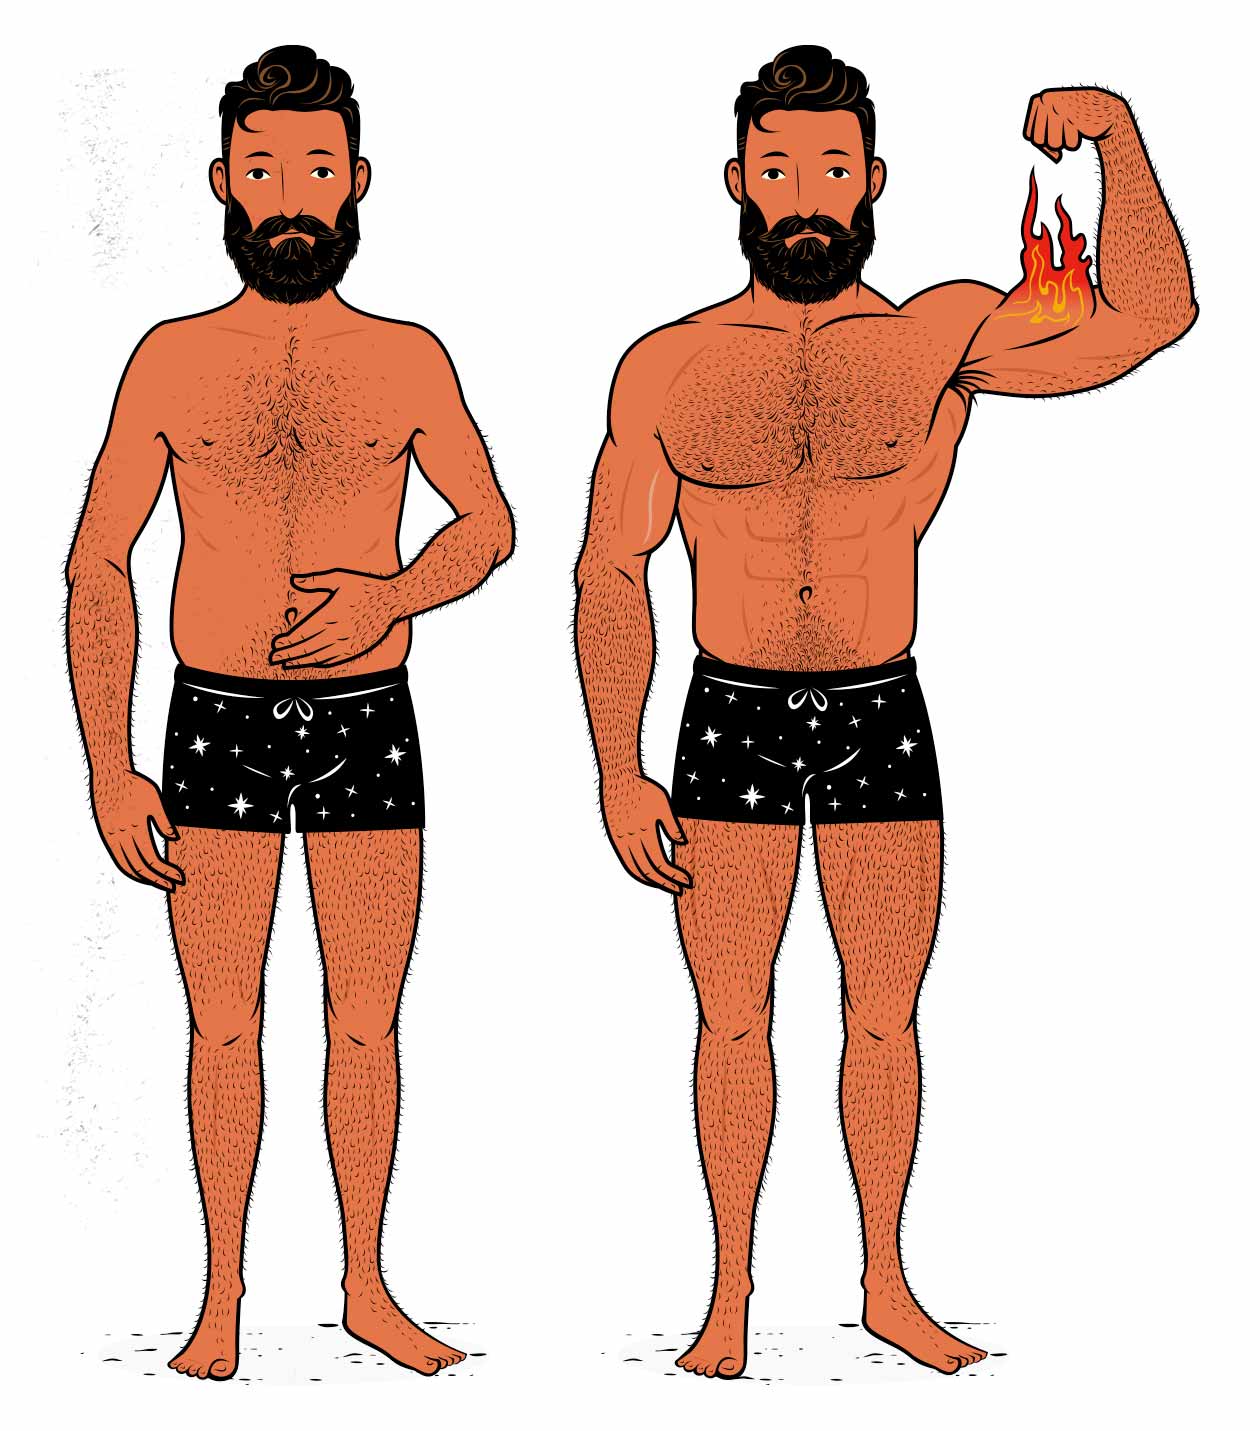 Ilustración de la transformación de un hombre, de robusto a musculoso.